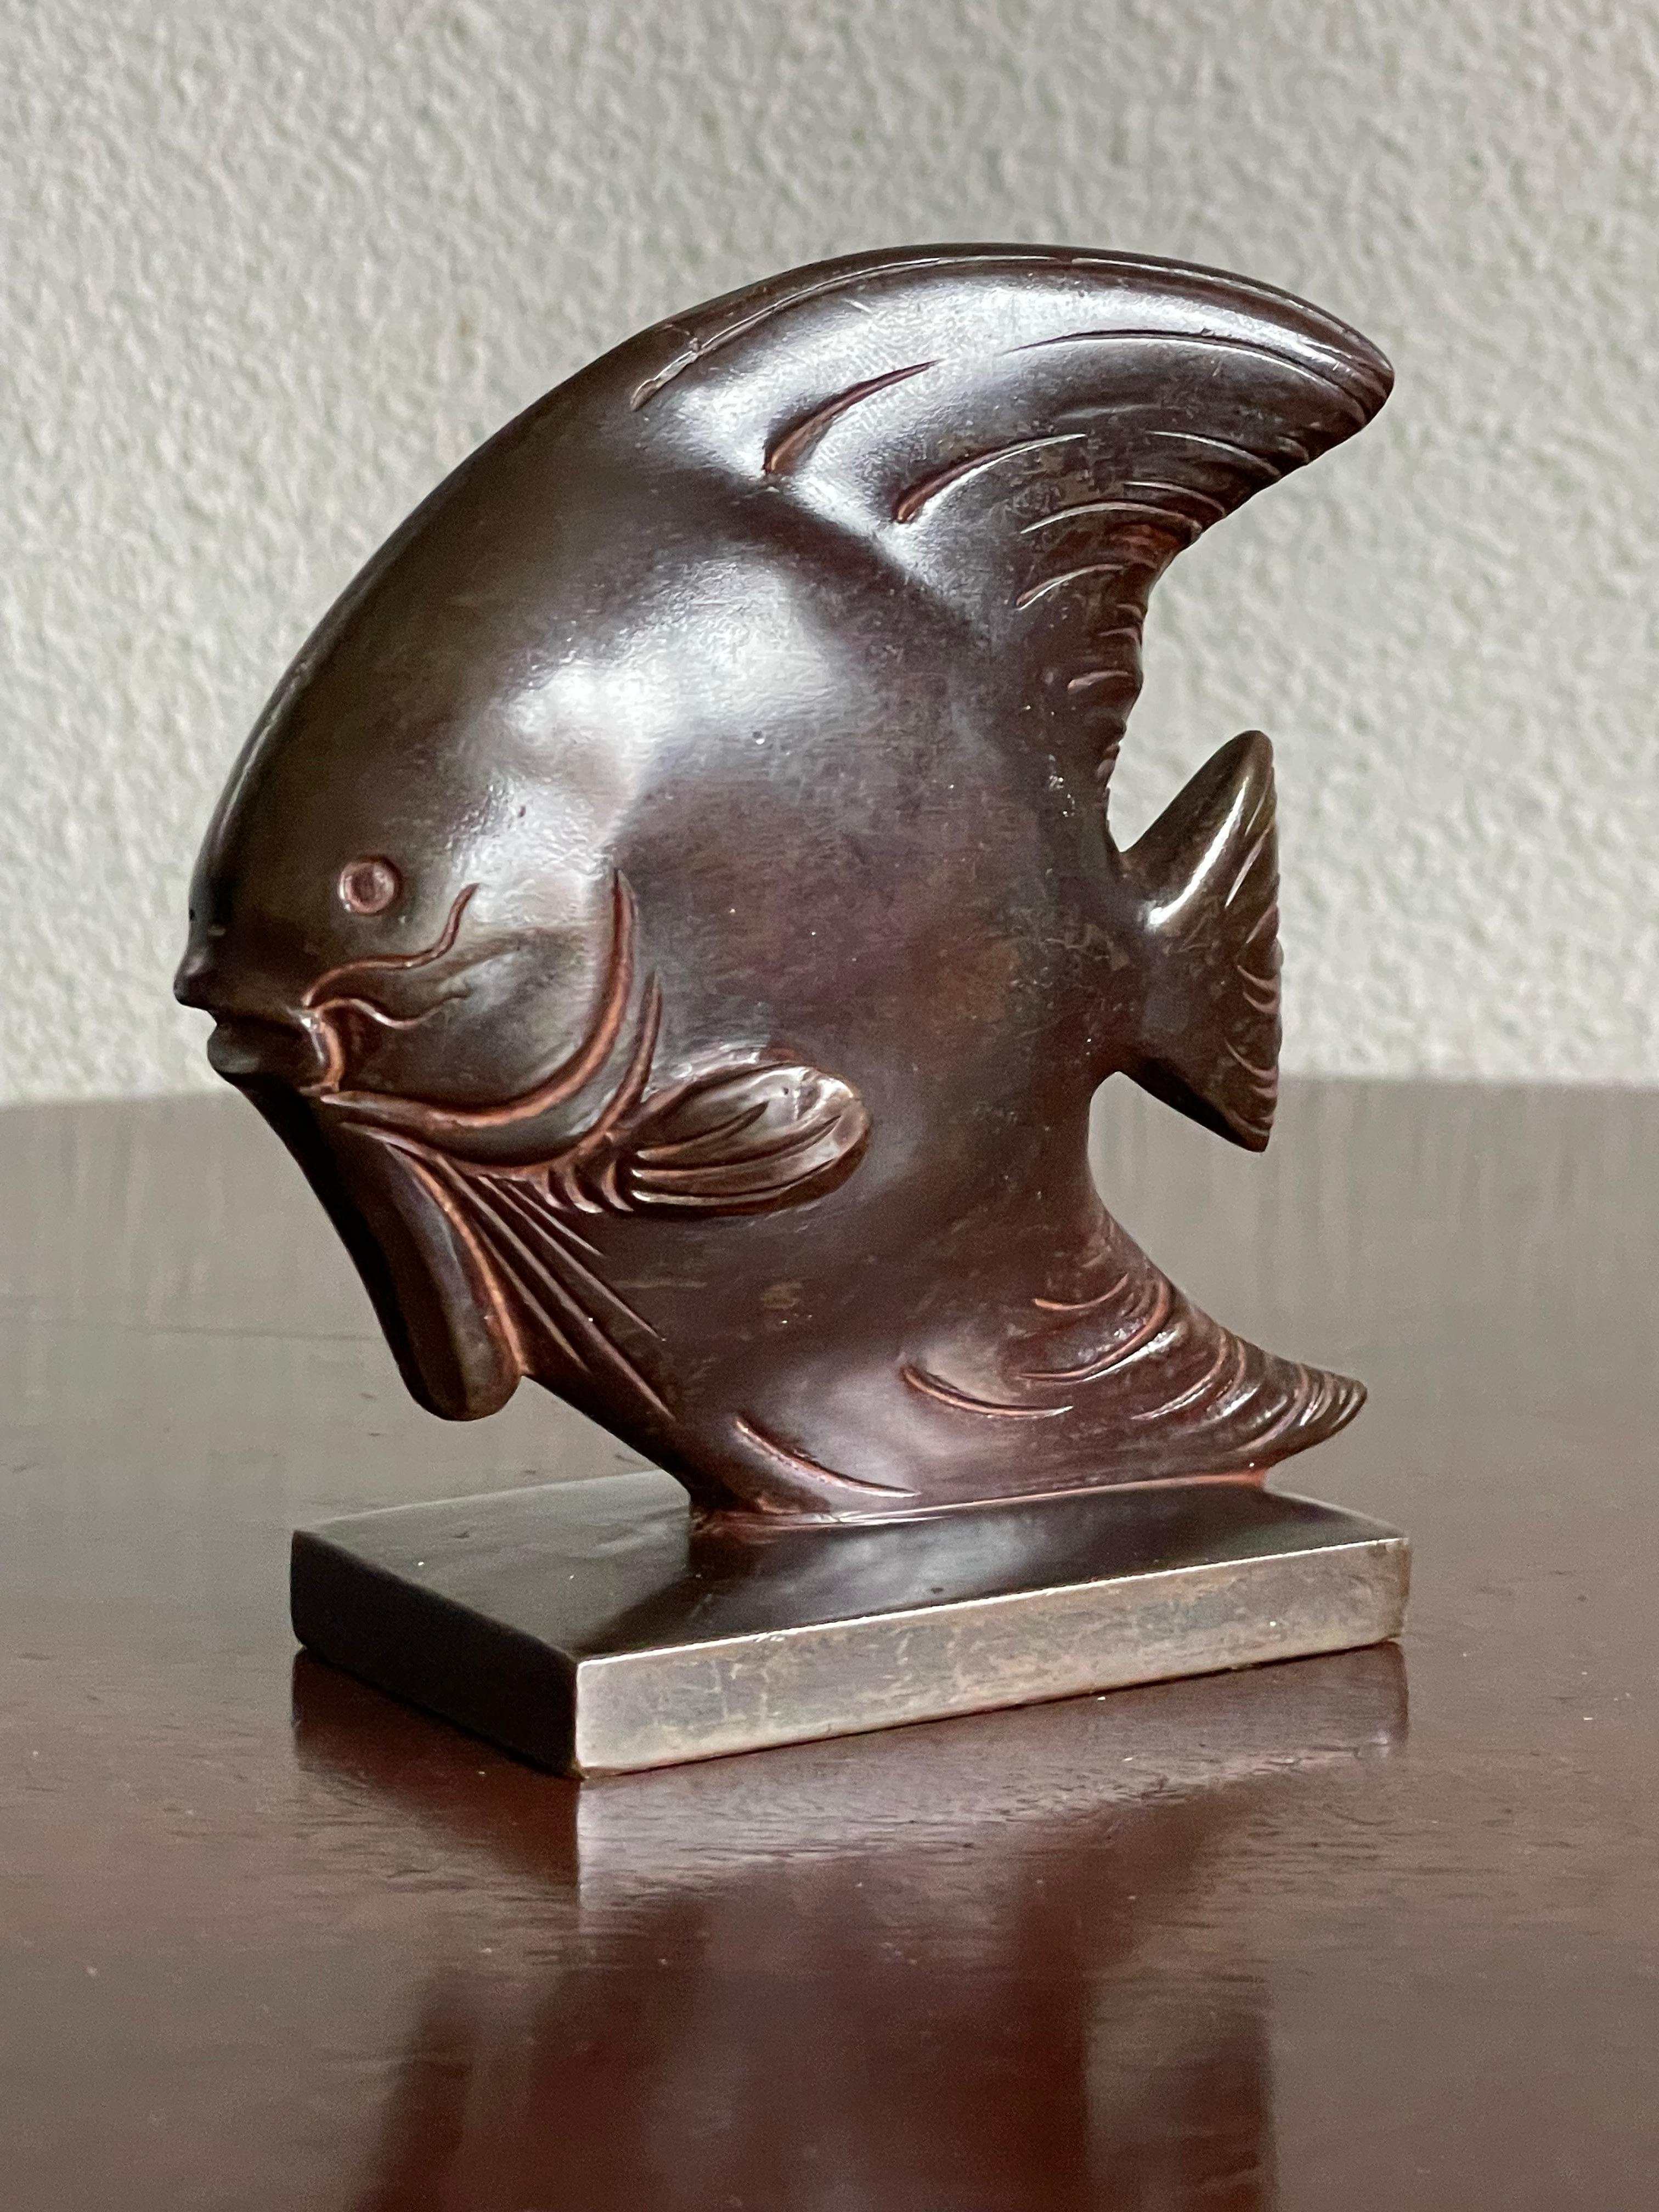 Ästhetisch wunderbare, kleine Diskusfisch-Skulptur aus Bronze.

Diese atemberaubende Bronzeskulptur eines Symphysodons (oder Diskusfisches) ist ein weiterer großartiger Fund aus unserer Sammlung. Wenn Sie ein Auge für hochwertige handgefertigte